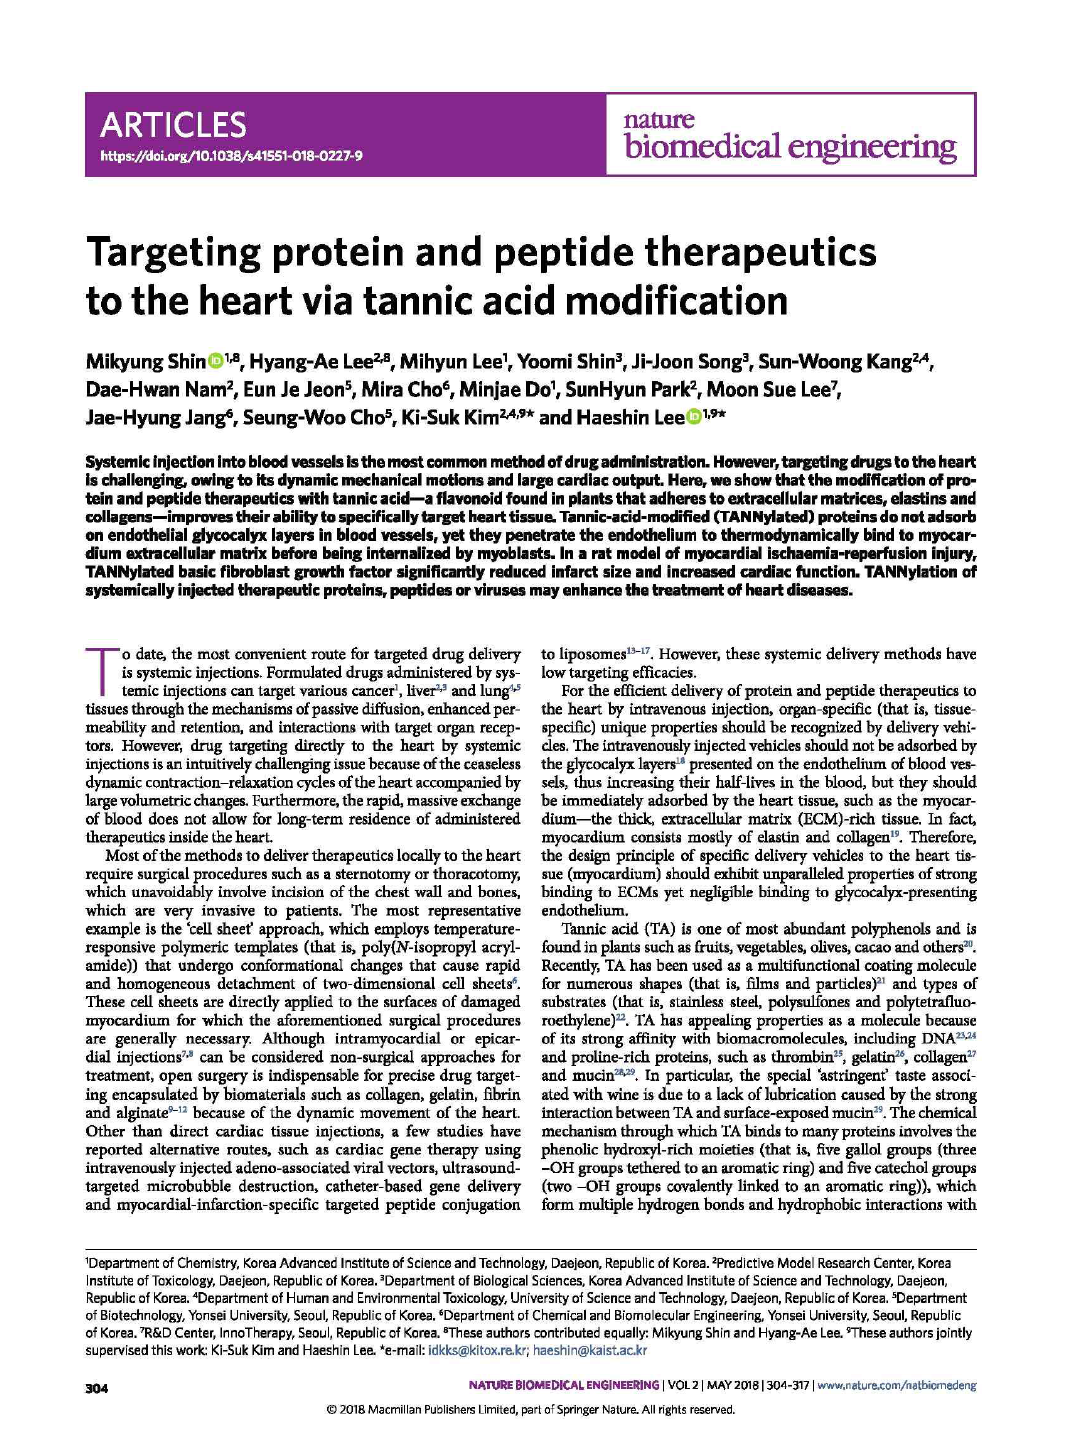 논문2. Targeting protein and peptide therapeutics to the heart via tannic acid modification